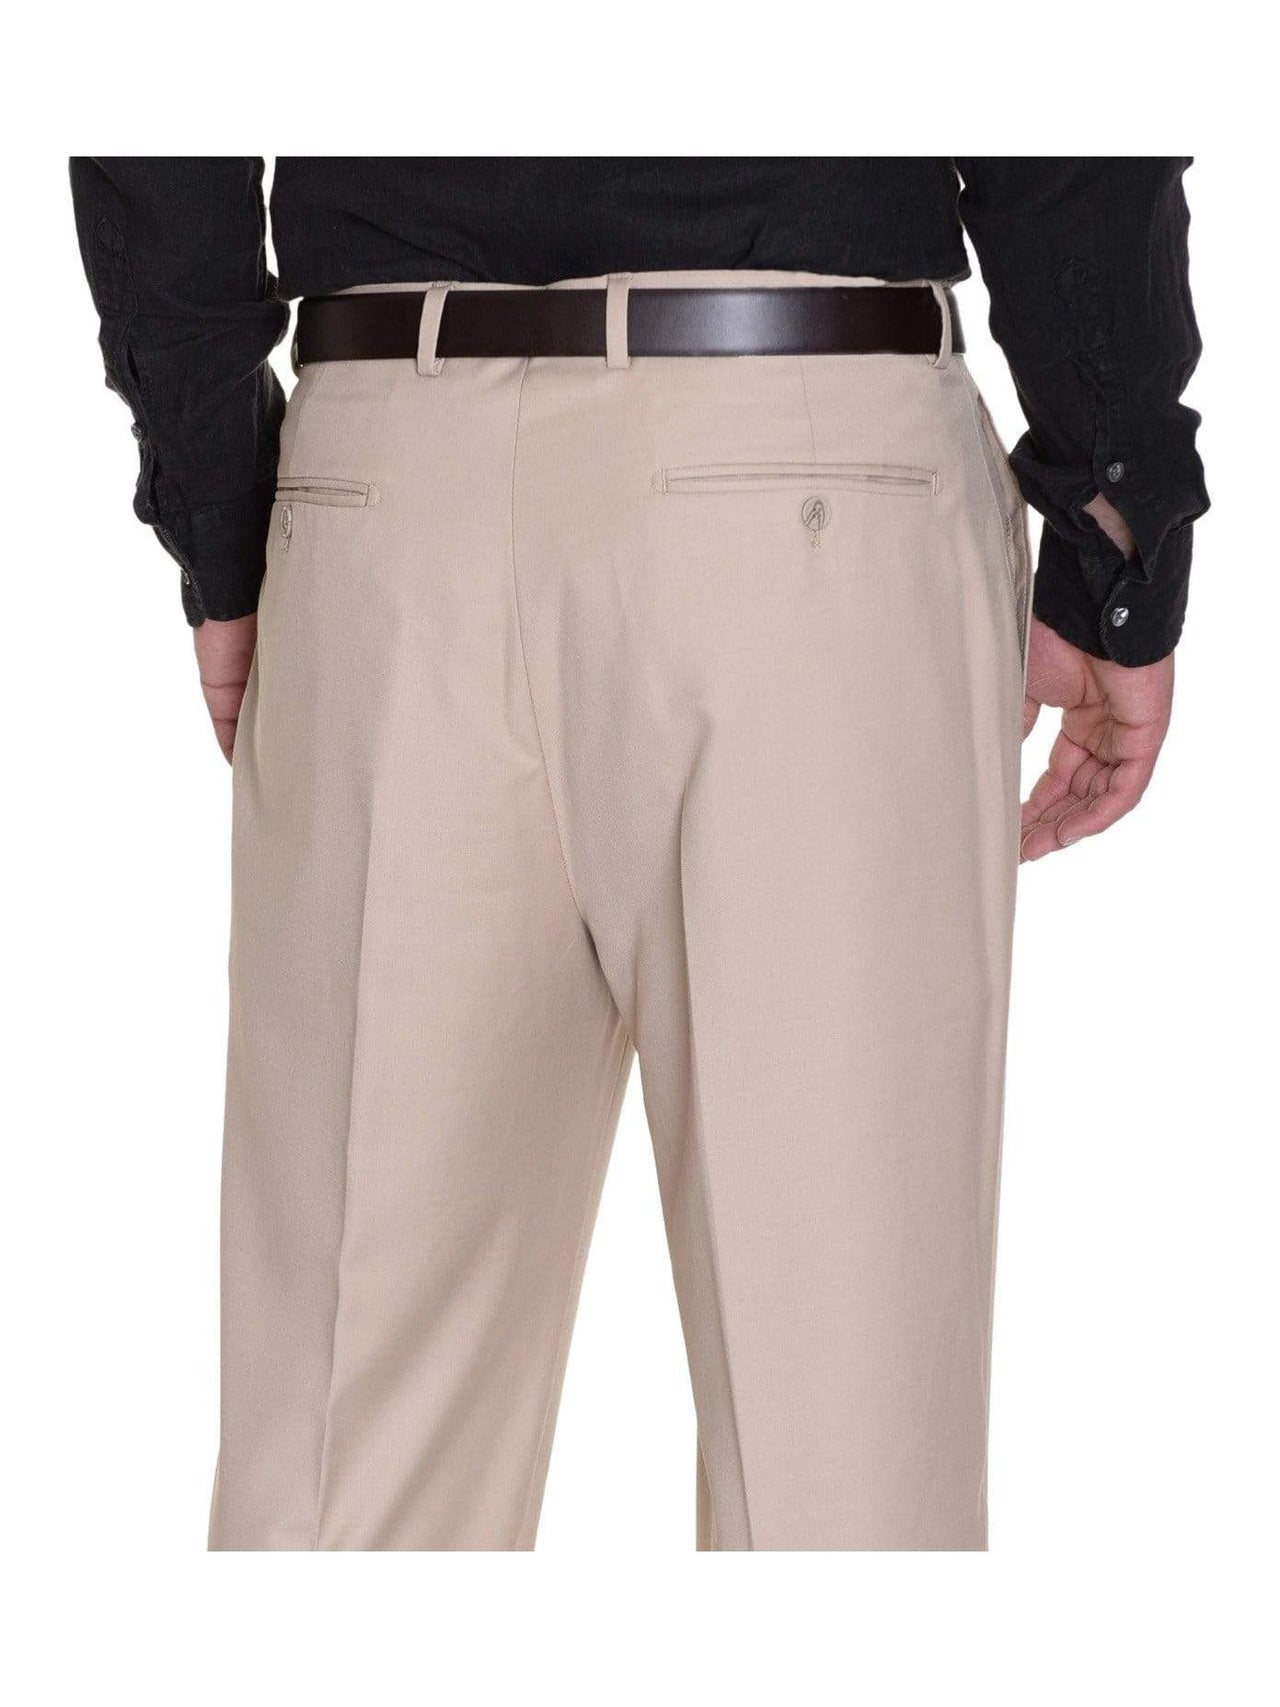 Raphael Solid Tan Flat Front Dress Pants - The Suit Depot